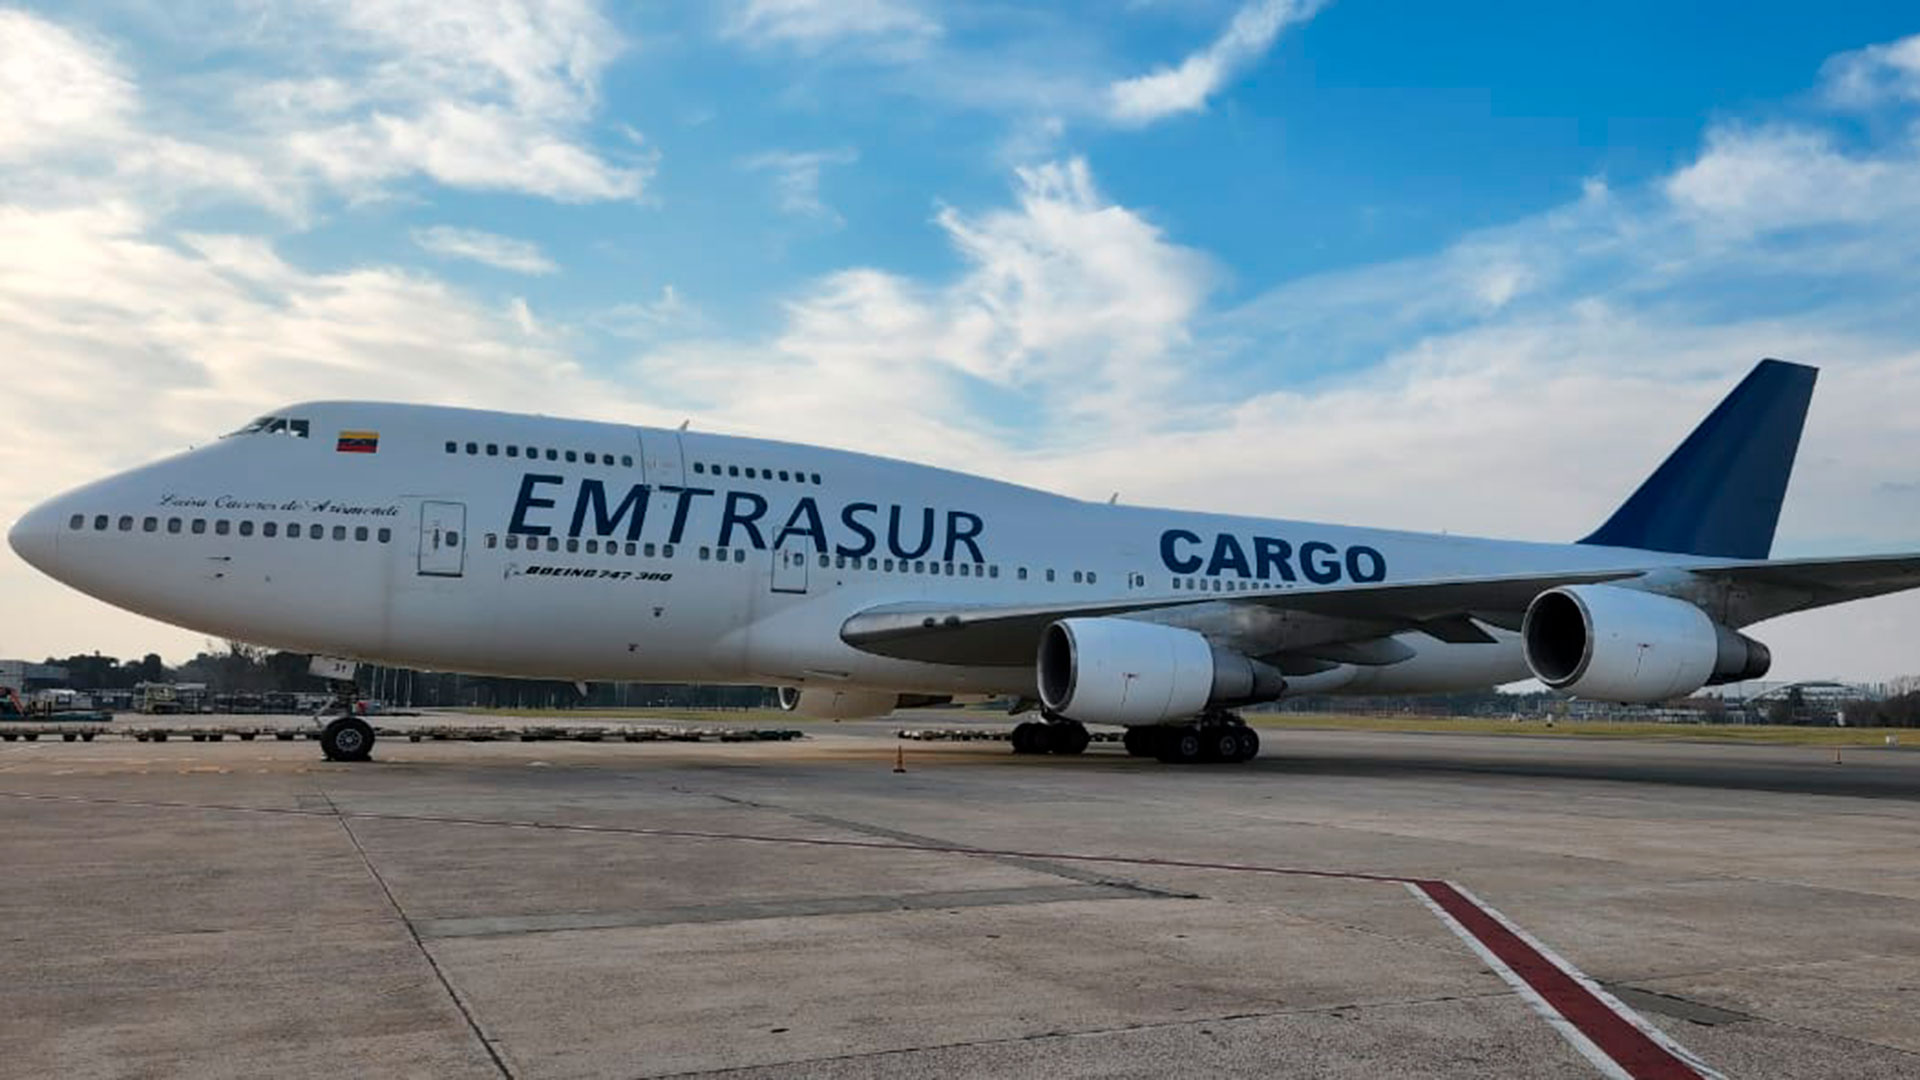 El avión de Emtrasur está retenido en Ezeiza desde el 8 de junio